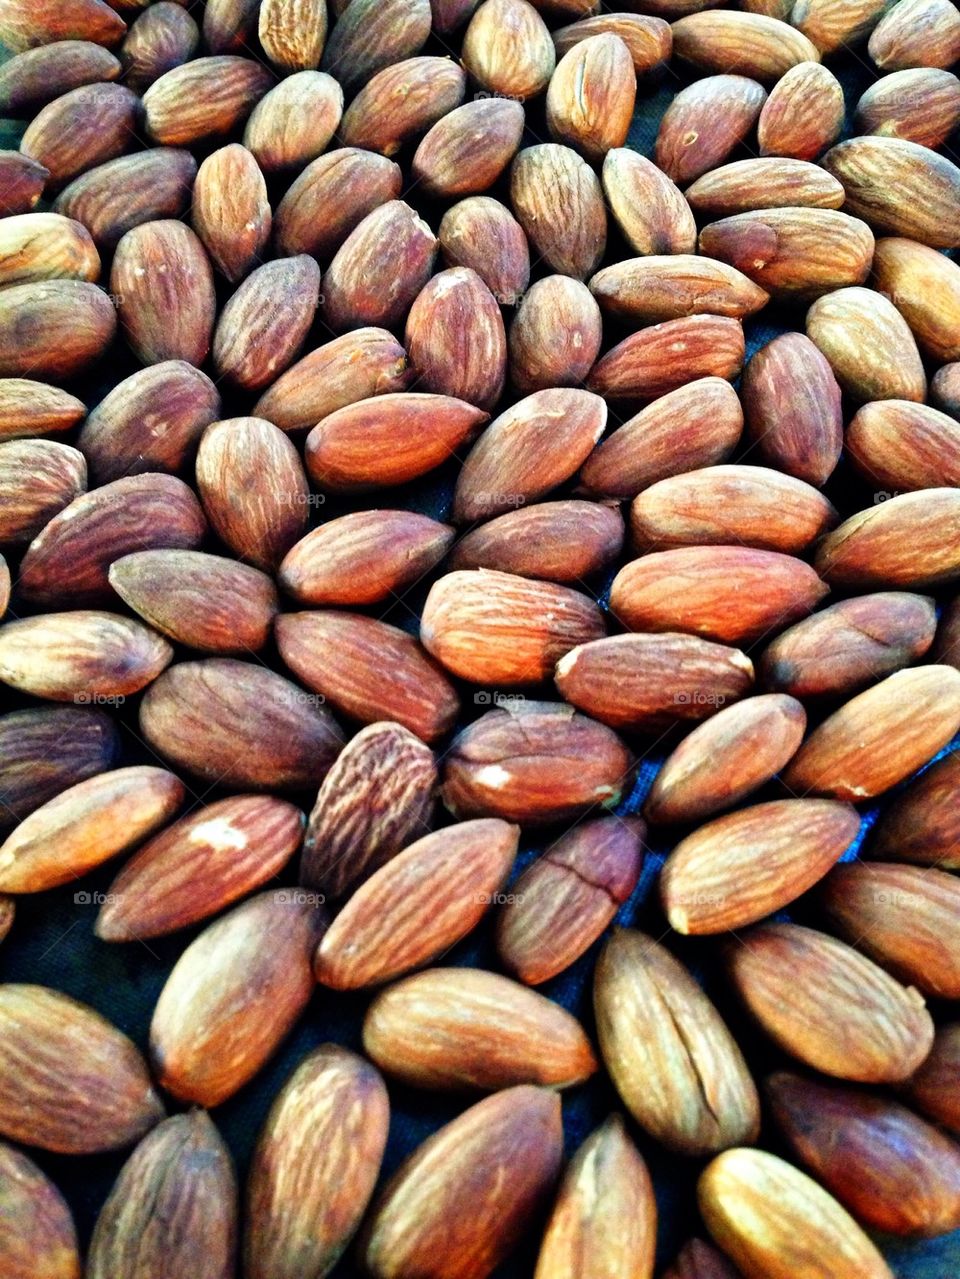 Full frame of roasted almonds